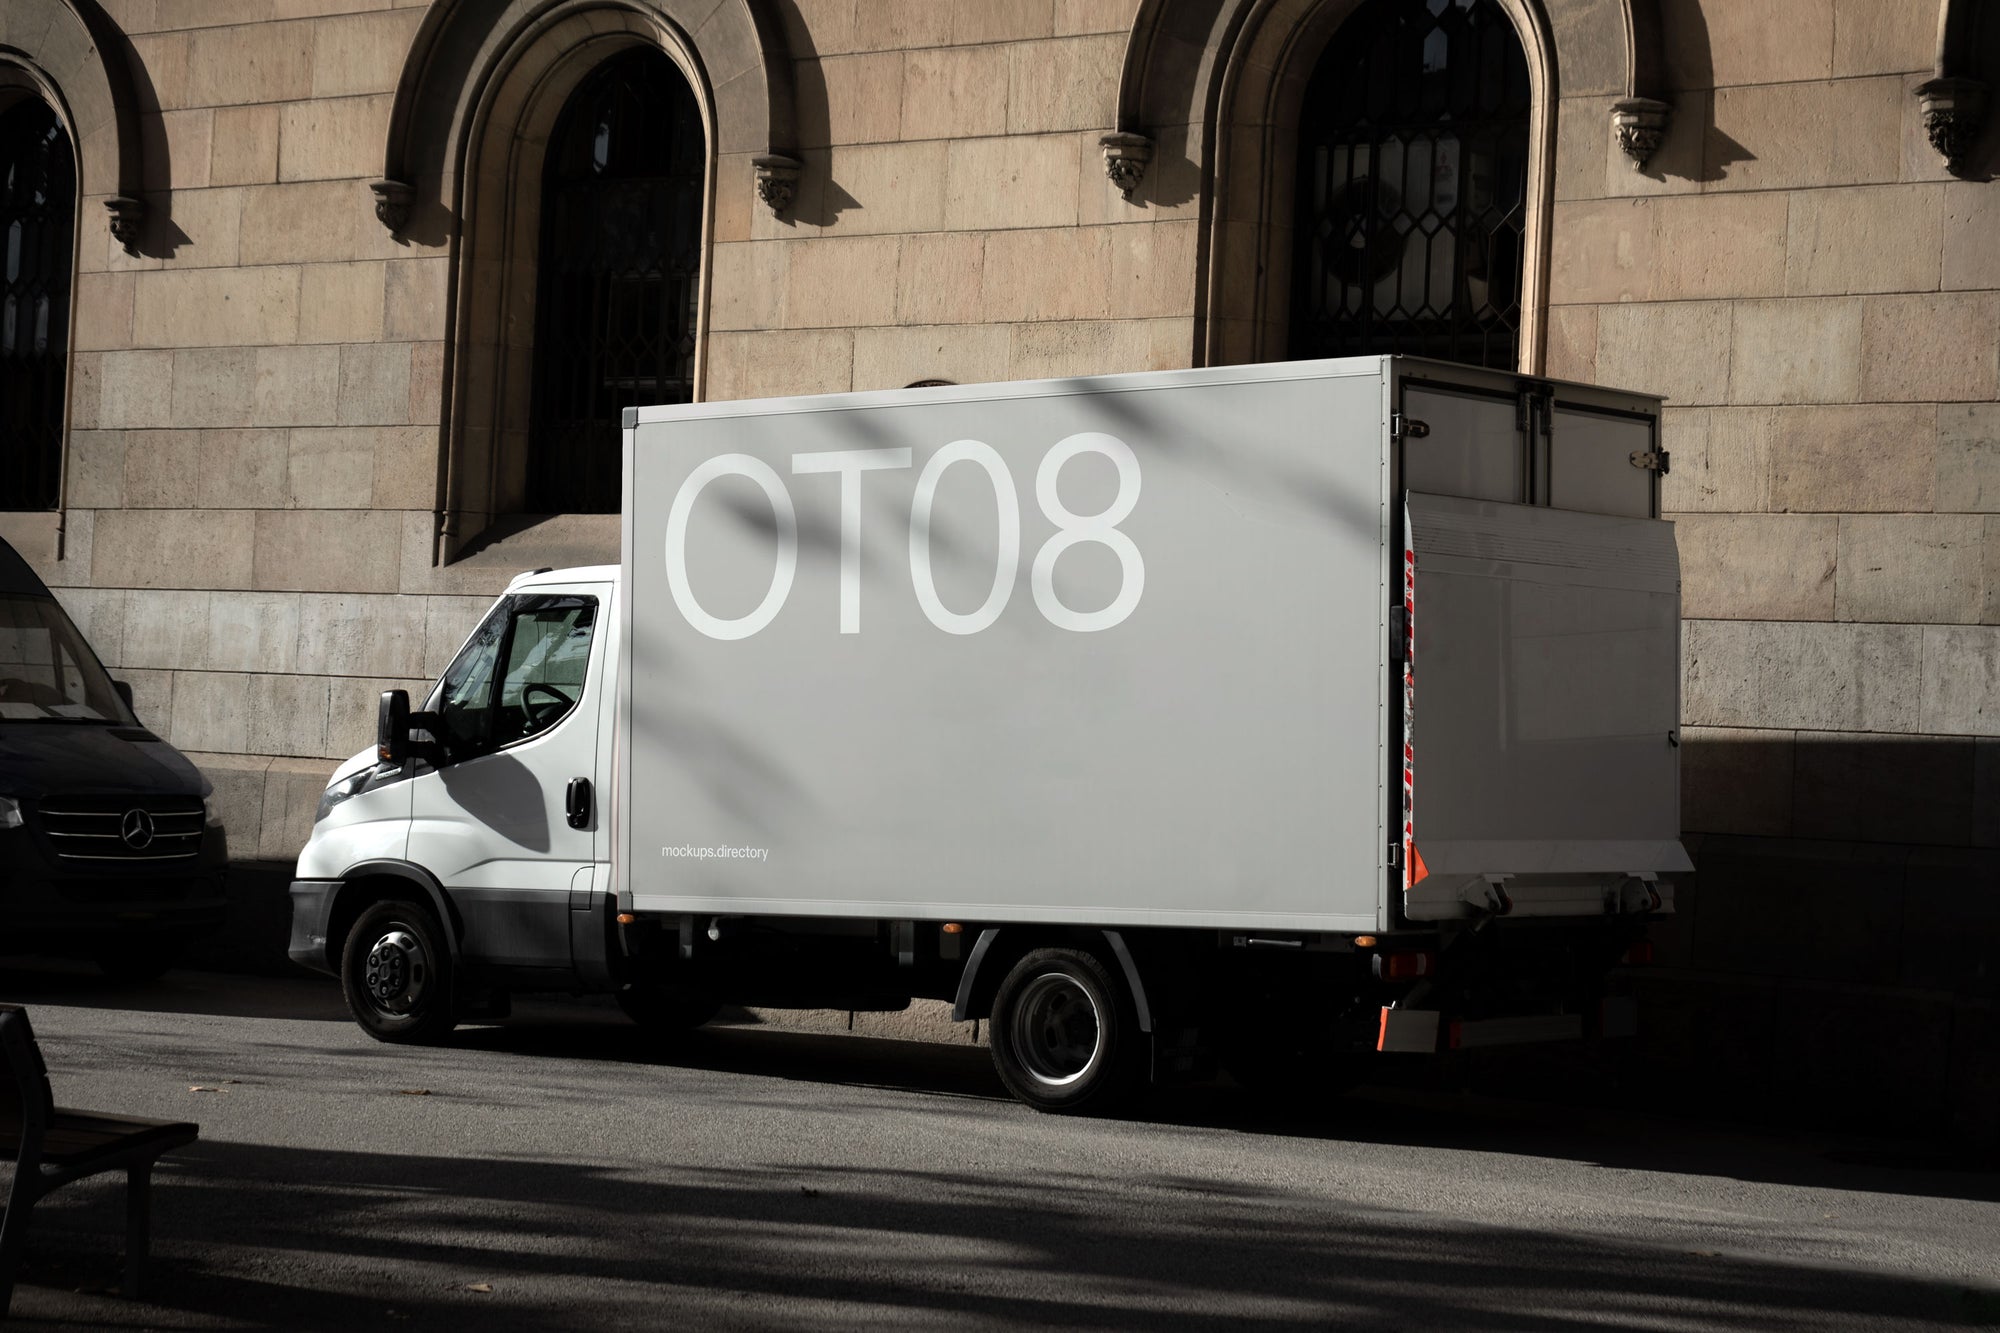 OT08 — Truck